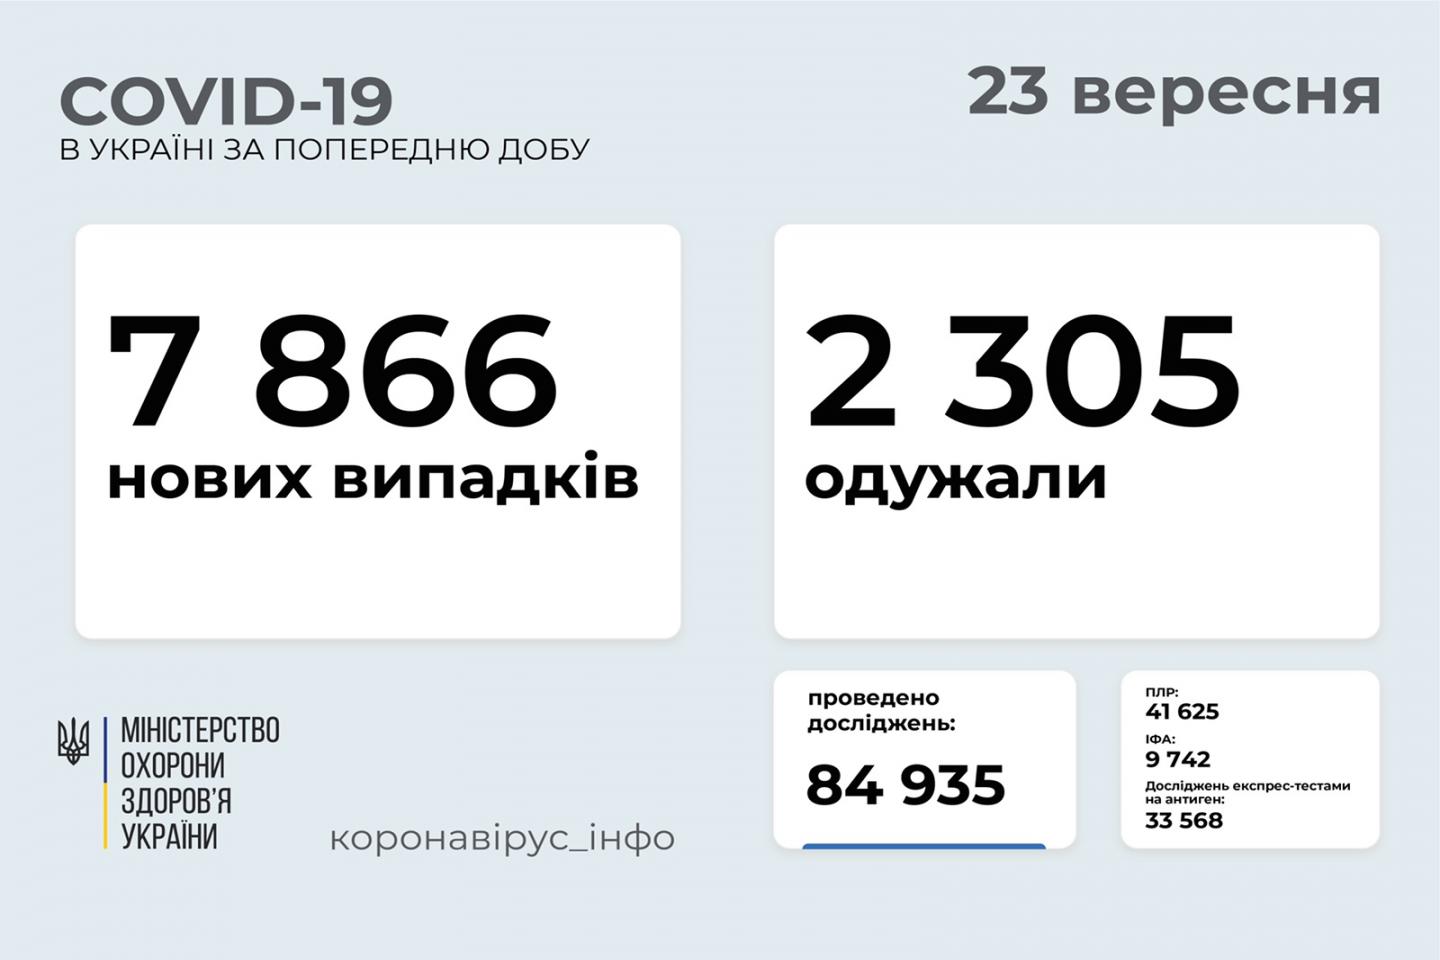 http://dunrada.gov.ua/uploadfile/archive_news/2021/09/23/2021-09-23_3133/images/images-64446.jpg